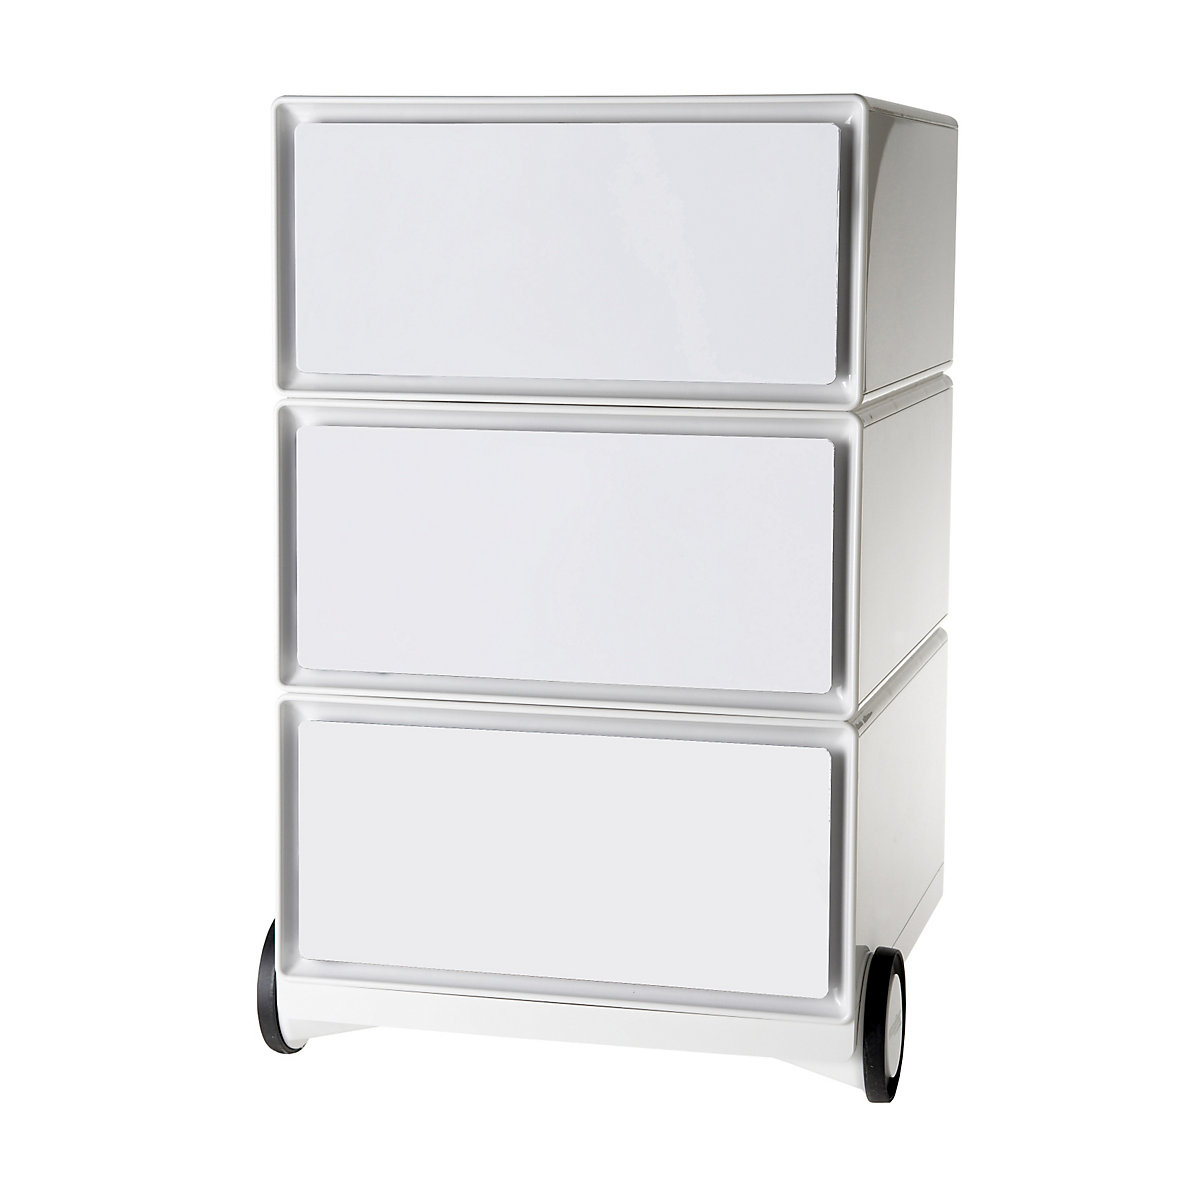 Pokretni ladičar easyBox® – Paperflow, 3 ladice, u bijeloj / bijeloj boji